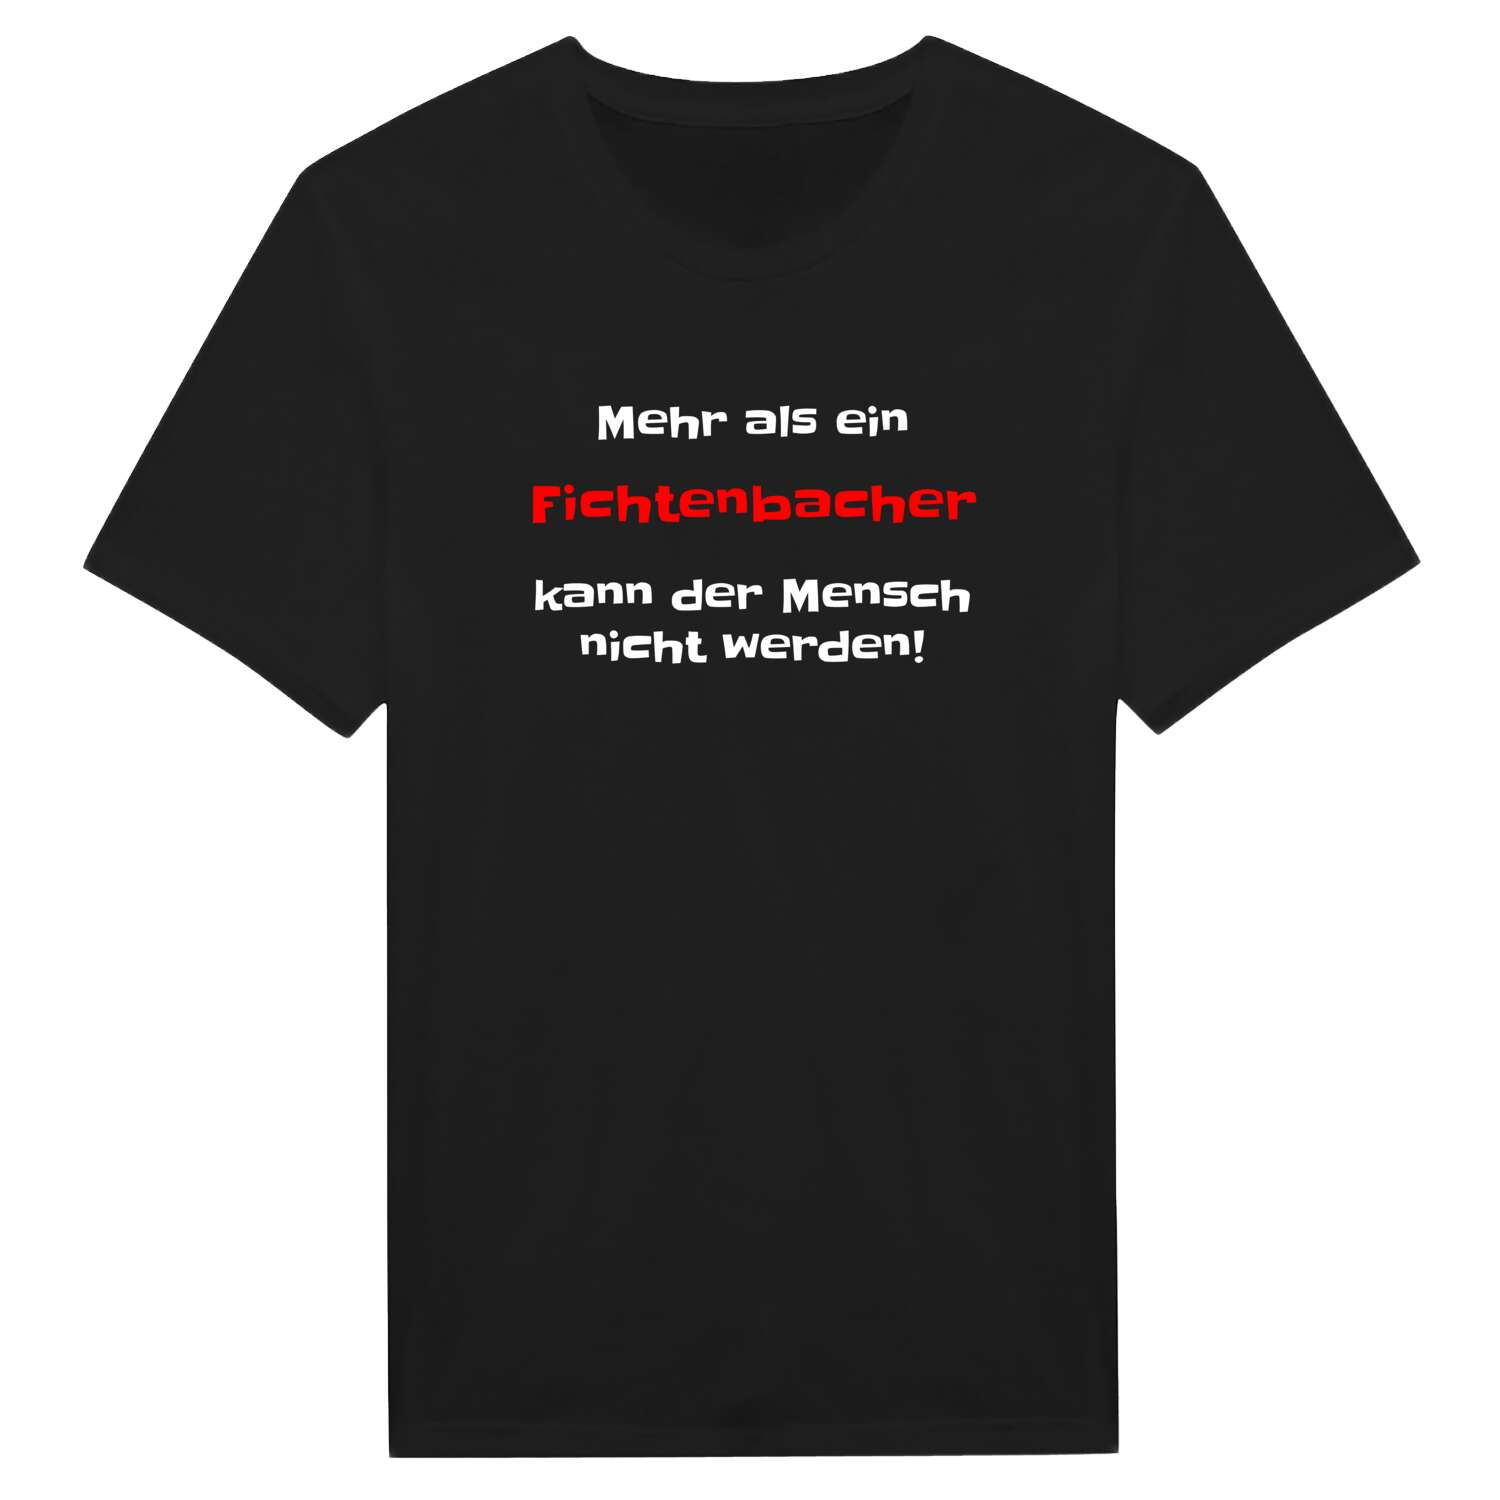 Fichtenbach T-Shirt »Mehr als ein«